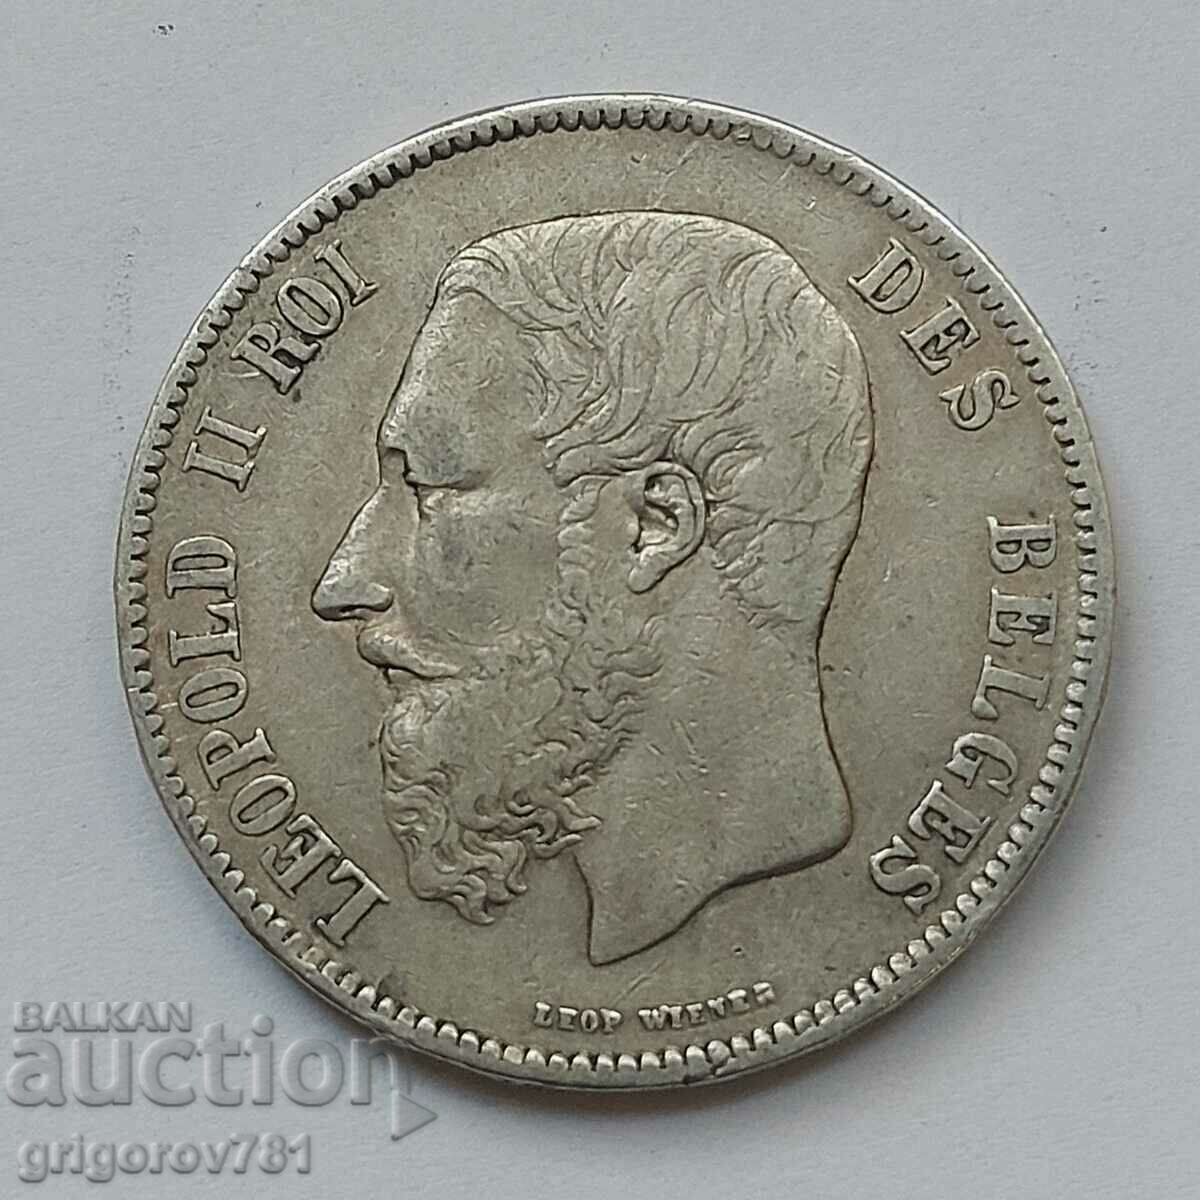 5 Francs Silver Belgium 1870 Silver Coin #172